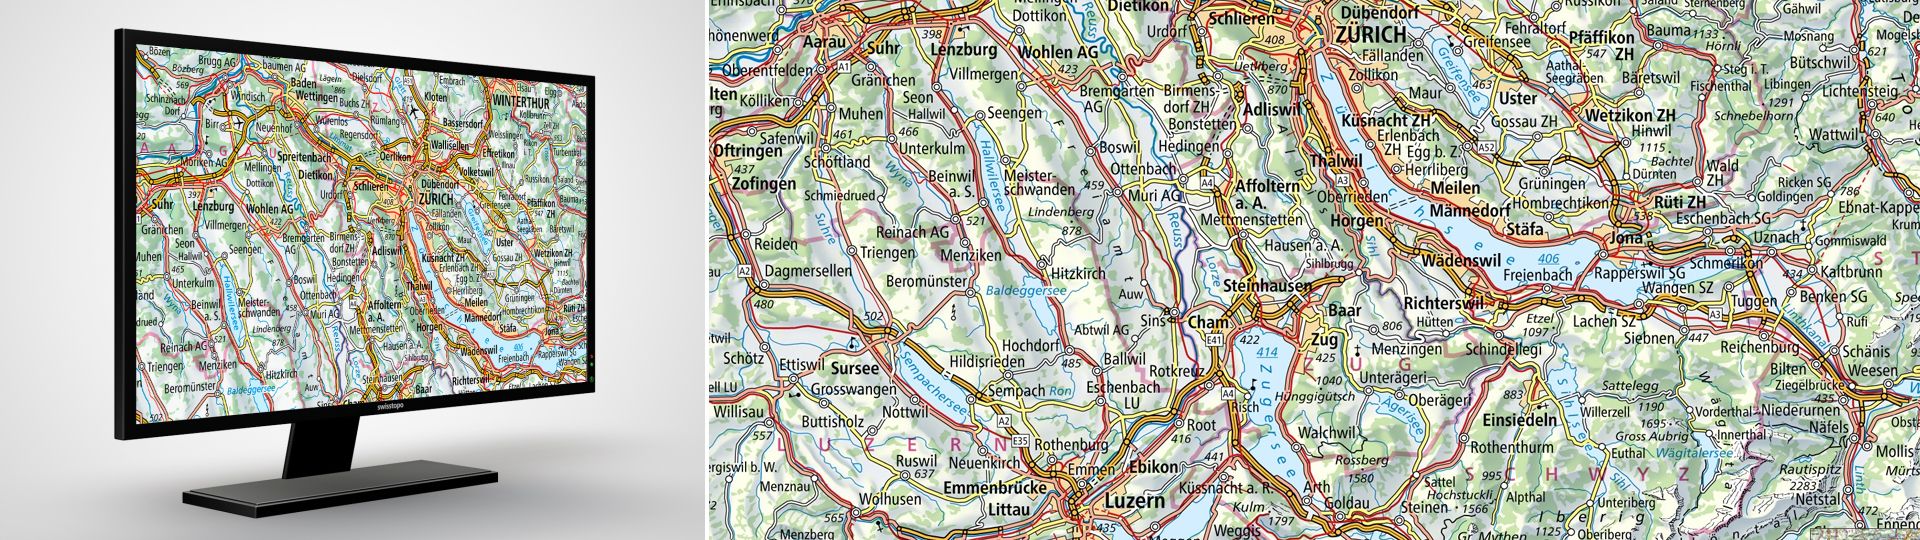 Swiss Map Raster 500: digitale Landeskarten der Schweiz im Rasterformat 1:500 000